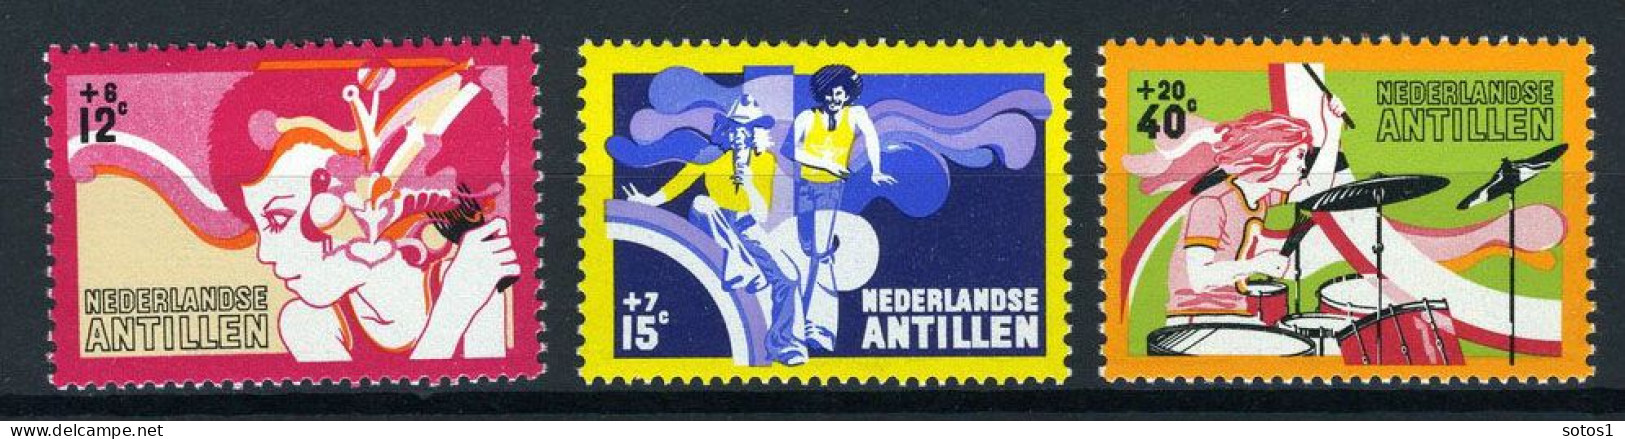 NL. ANTILLEN 489/491 MH 1974 - Cultuur, Tieners. - Curaçao, Antille Olandesi, Aruba